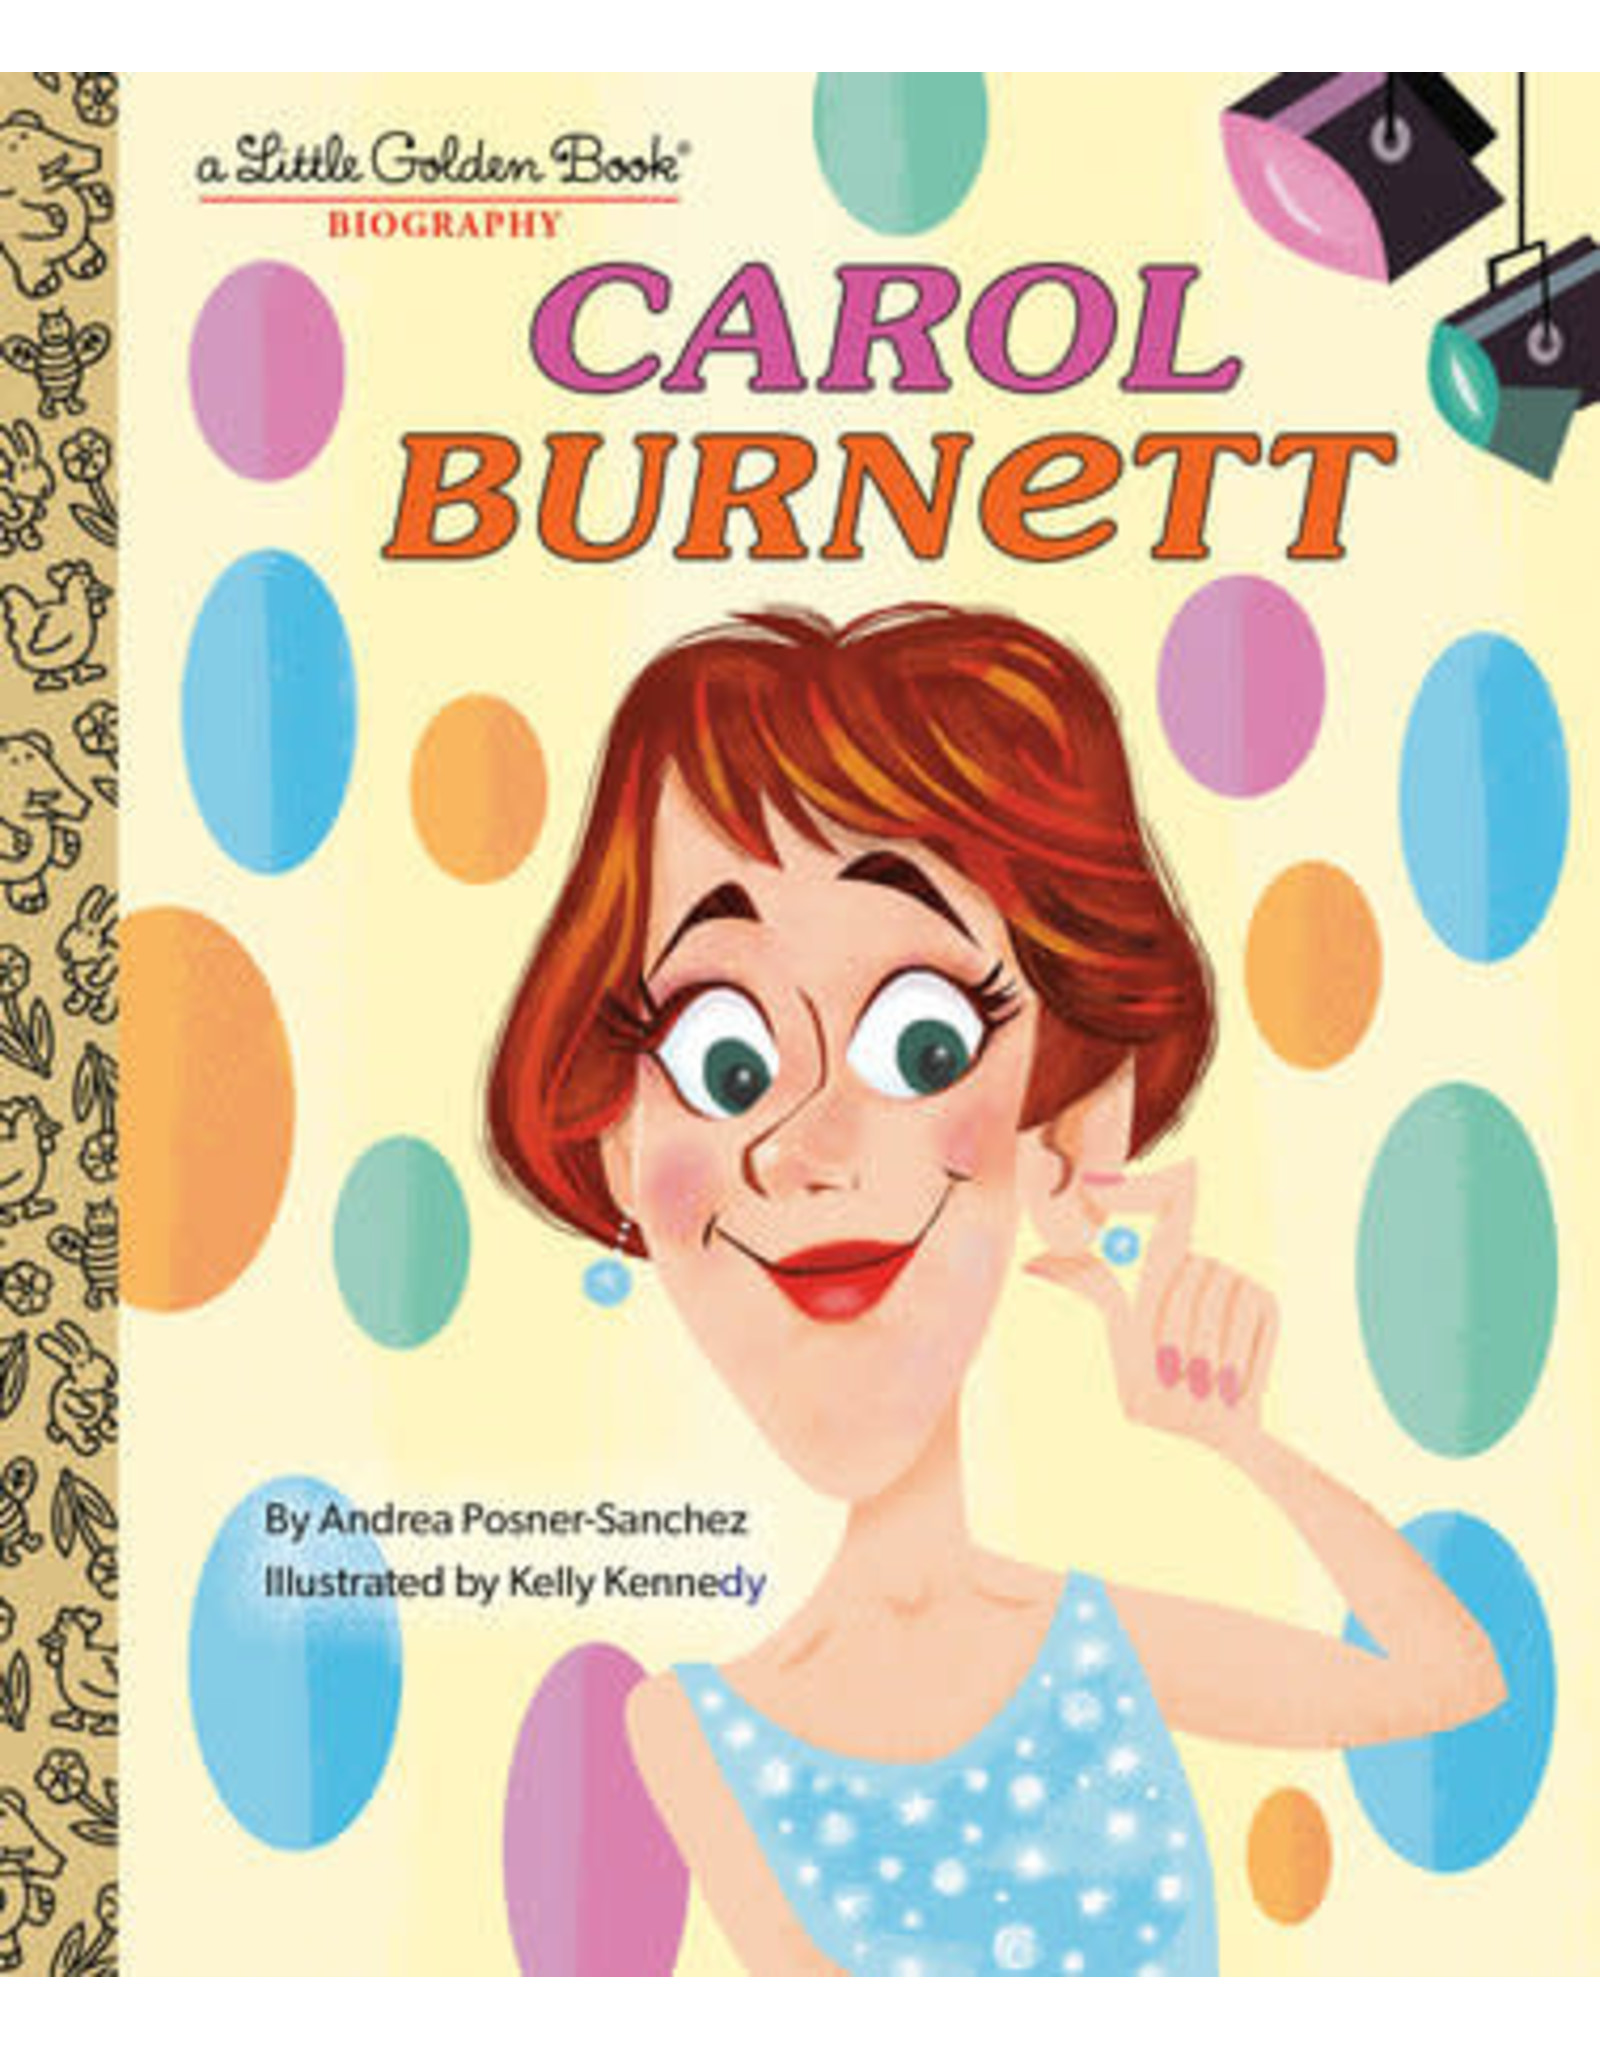 Little Golden Books Carol Burnett: A Little Golden Book Biography